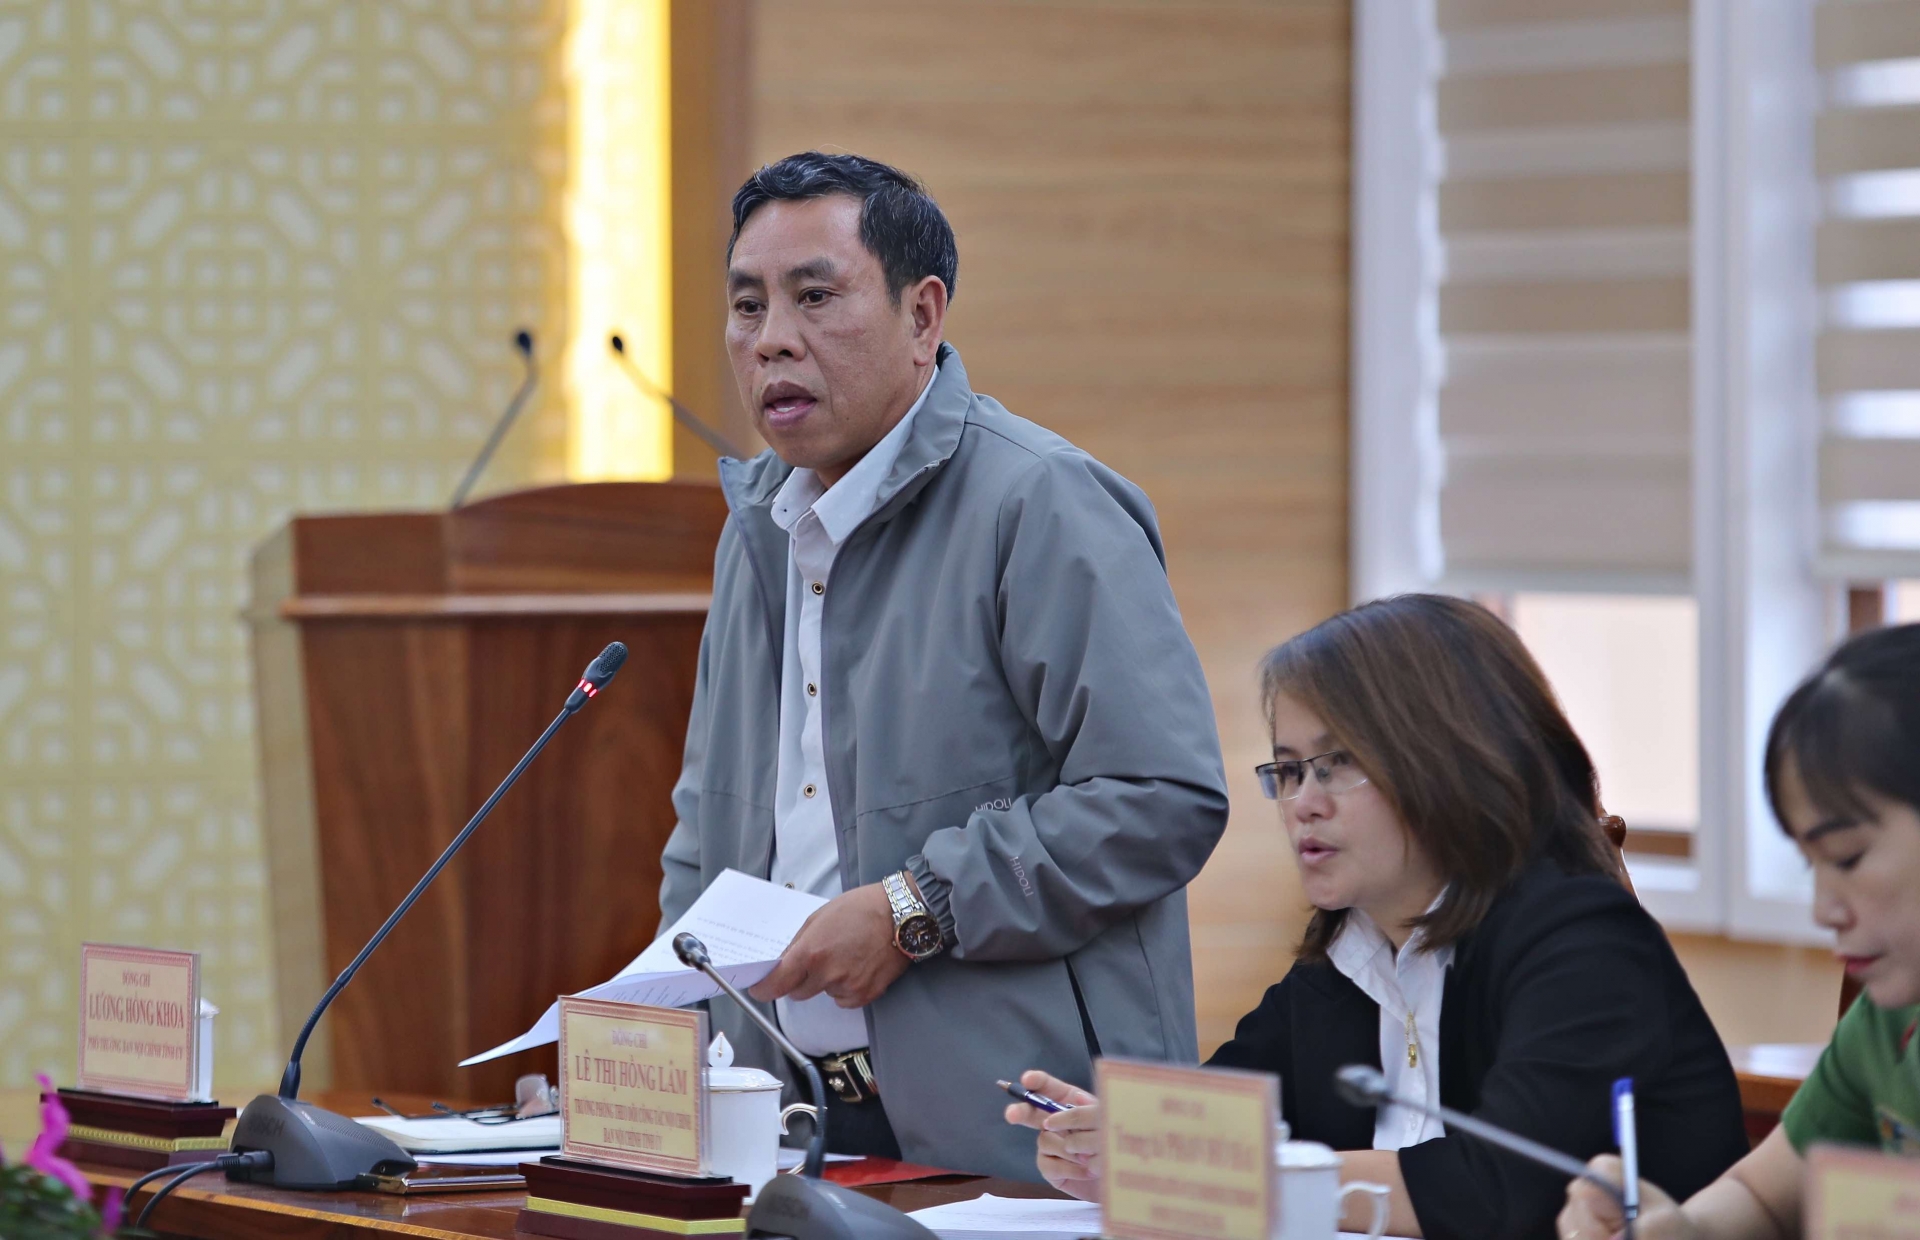 Đồng chí Trần Hồng Khoa, Phó trưởng Ban Nội chính Tỉnh ủy, được phân công làm tổ trưởng Tổ rà soát phát biểu tại buổi làm việc 